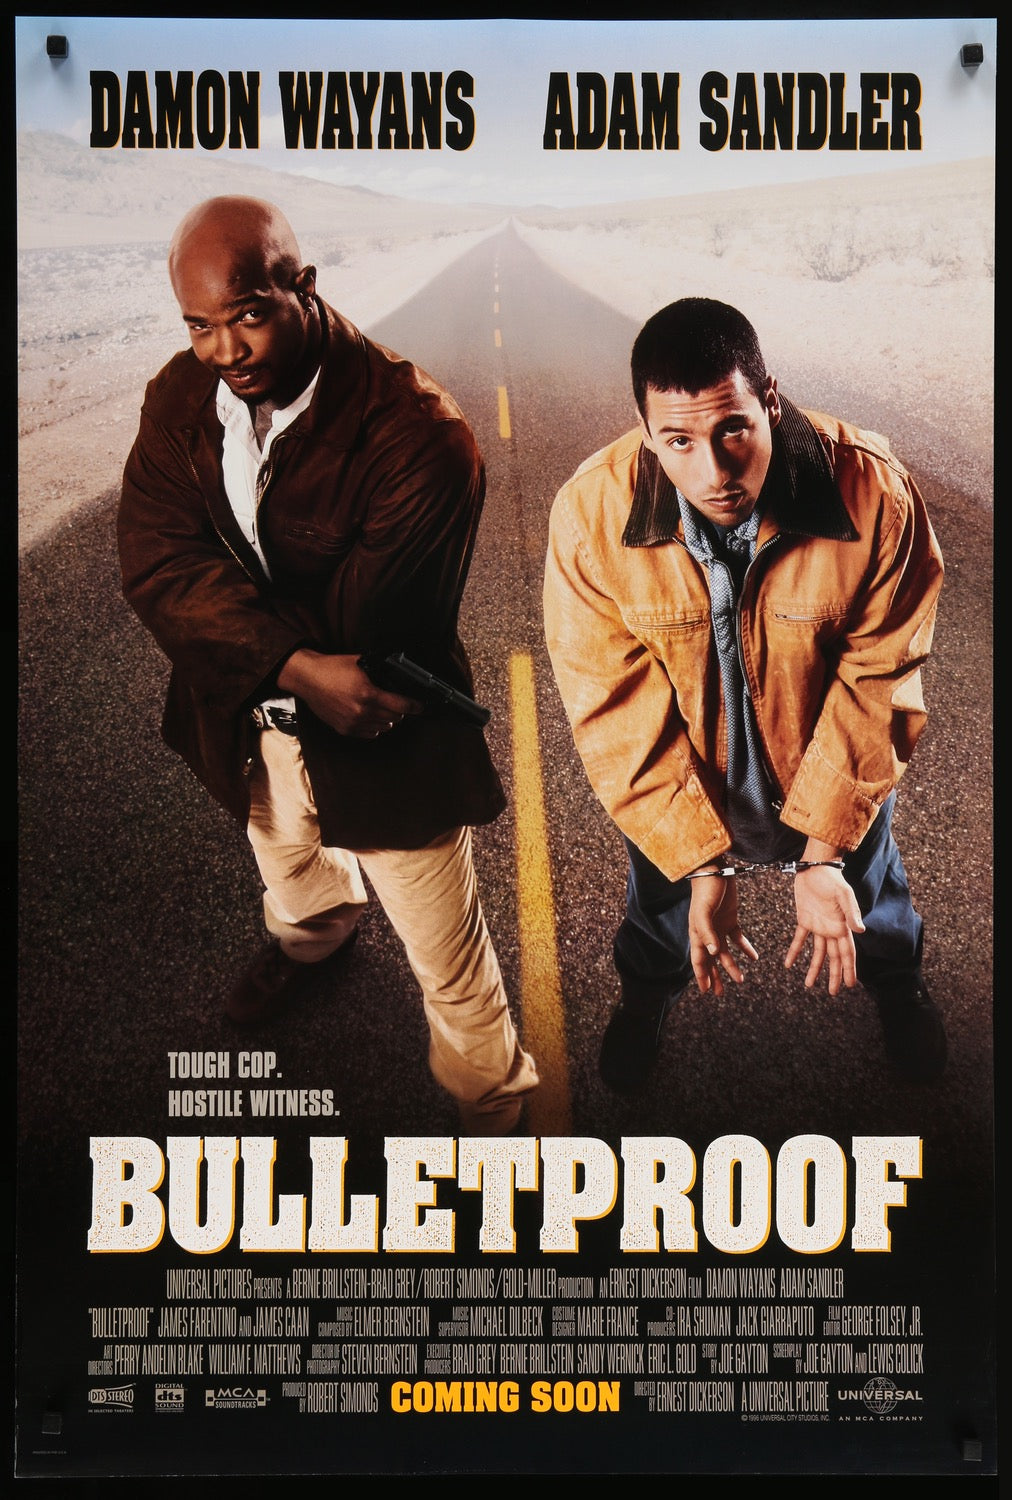 Bulletproof (1996) original movie poster for sale at Original Film Art